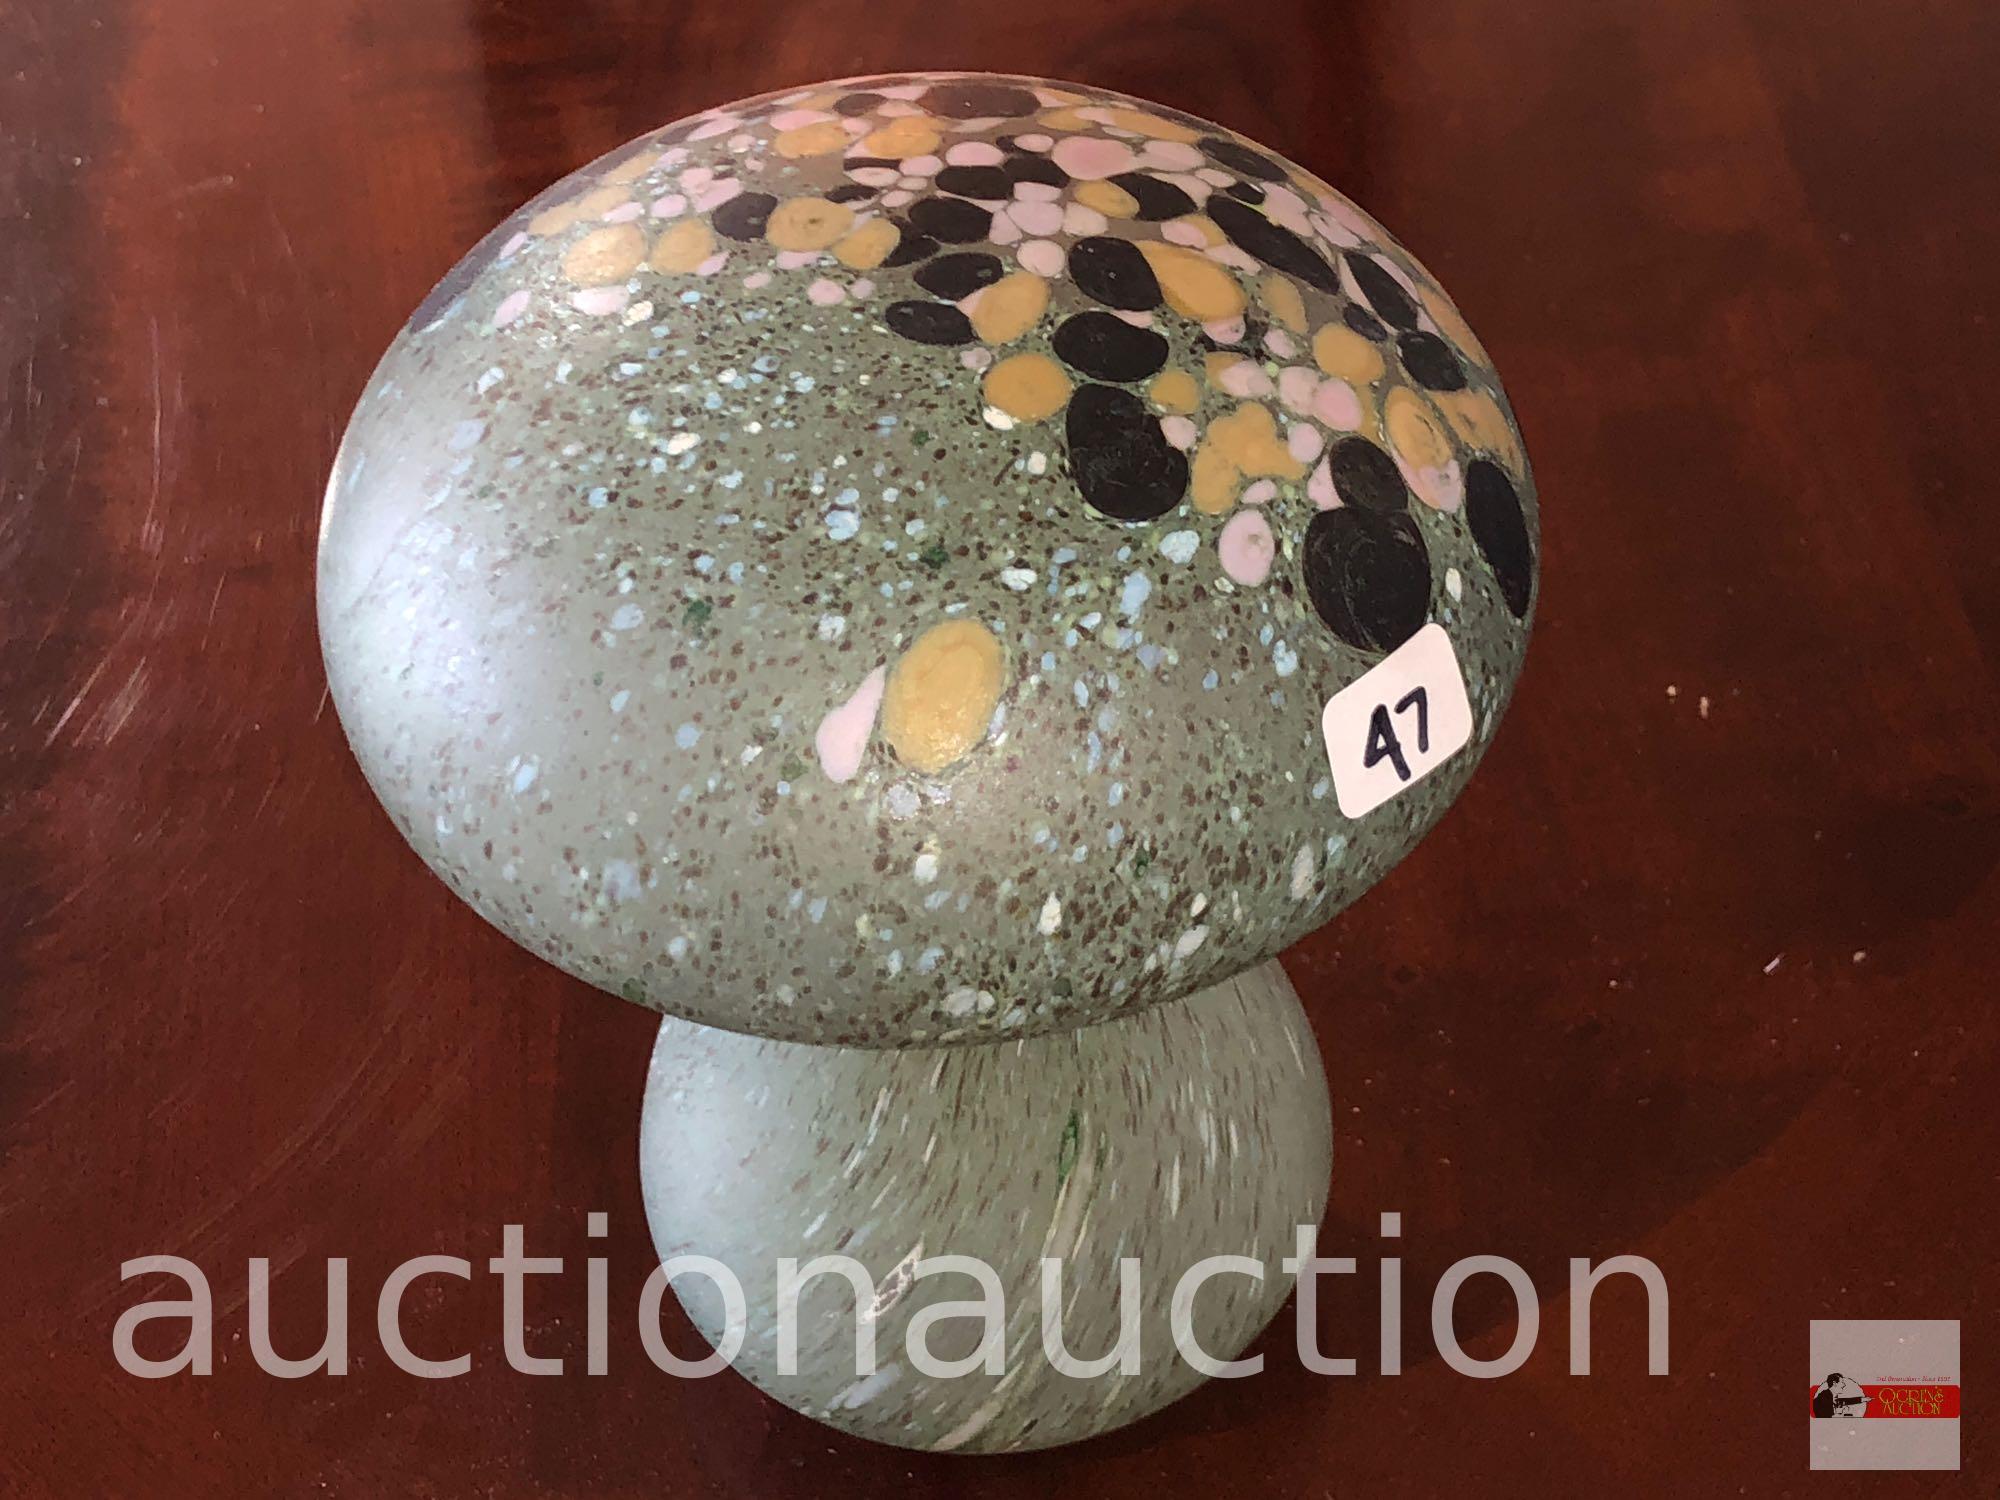 Art glass - Handmade Boda mushroom paperweight, Sweden, 5"wx6"h